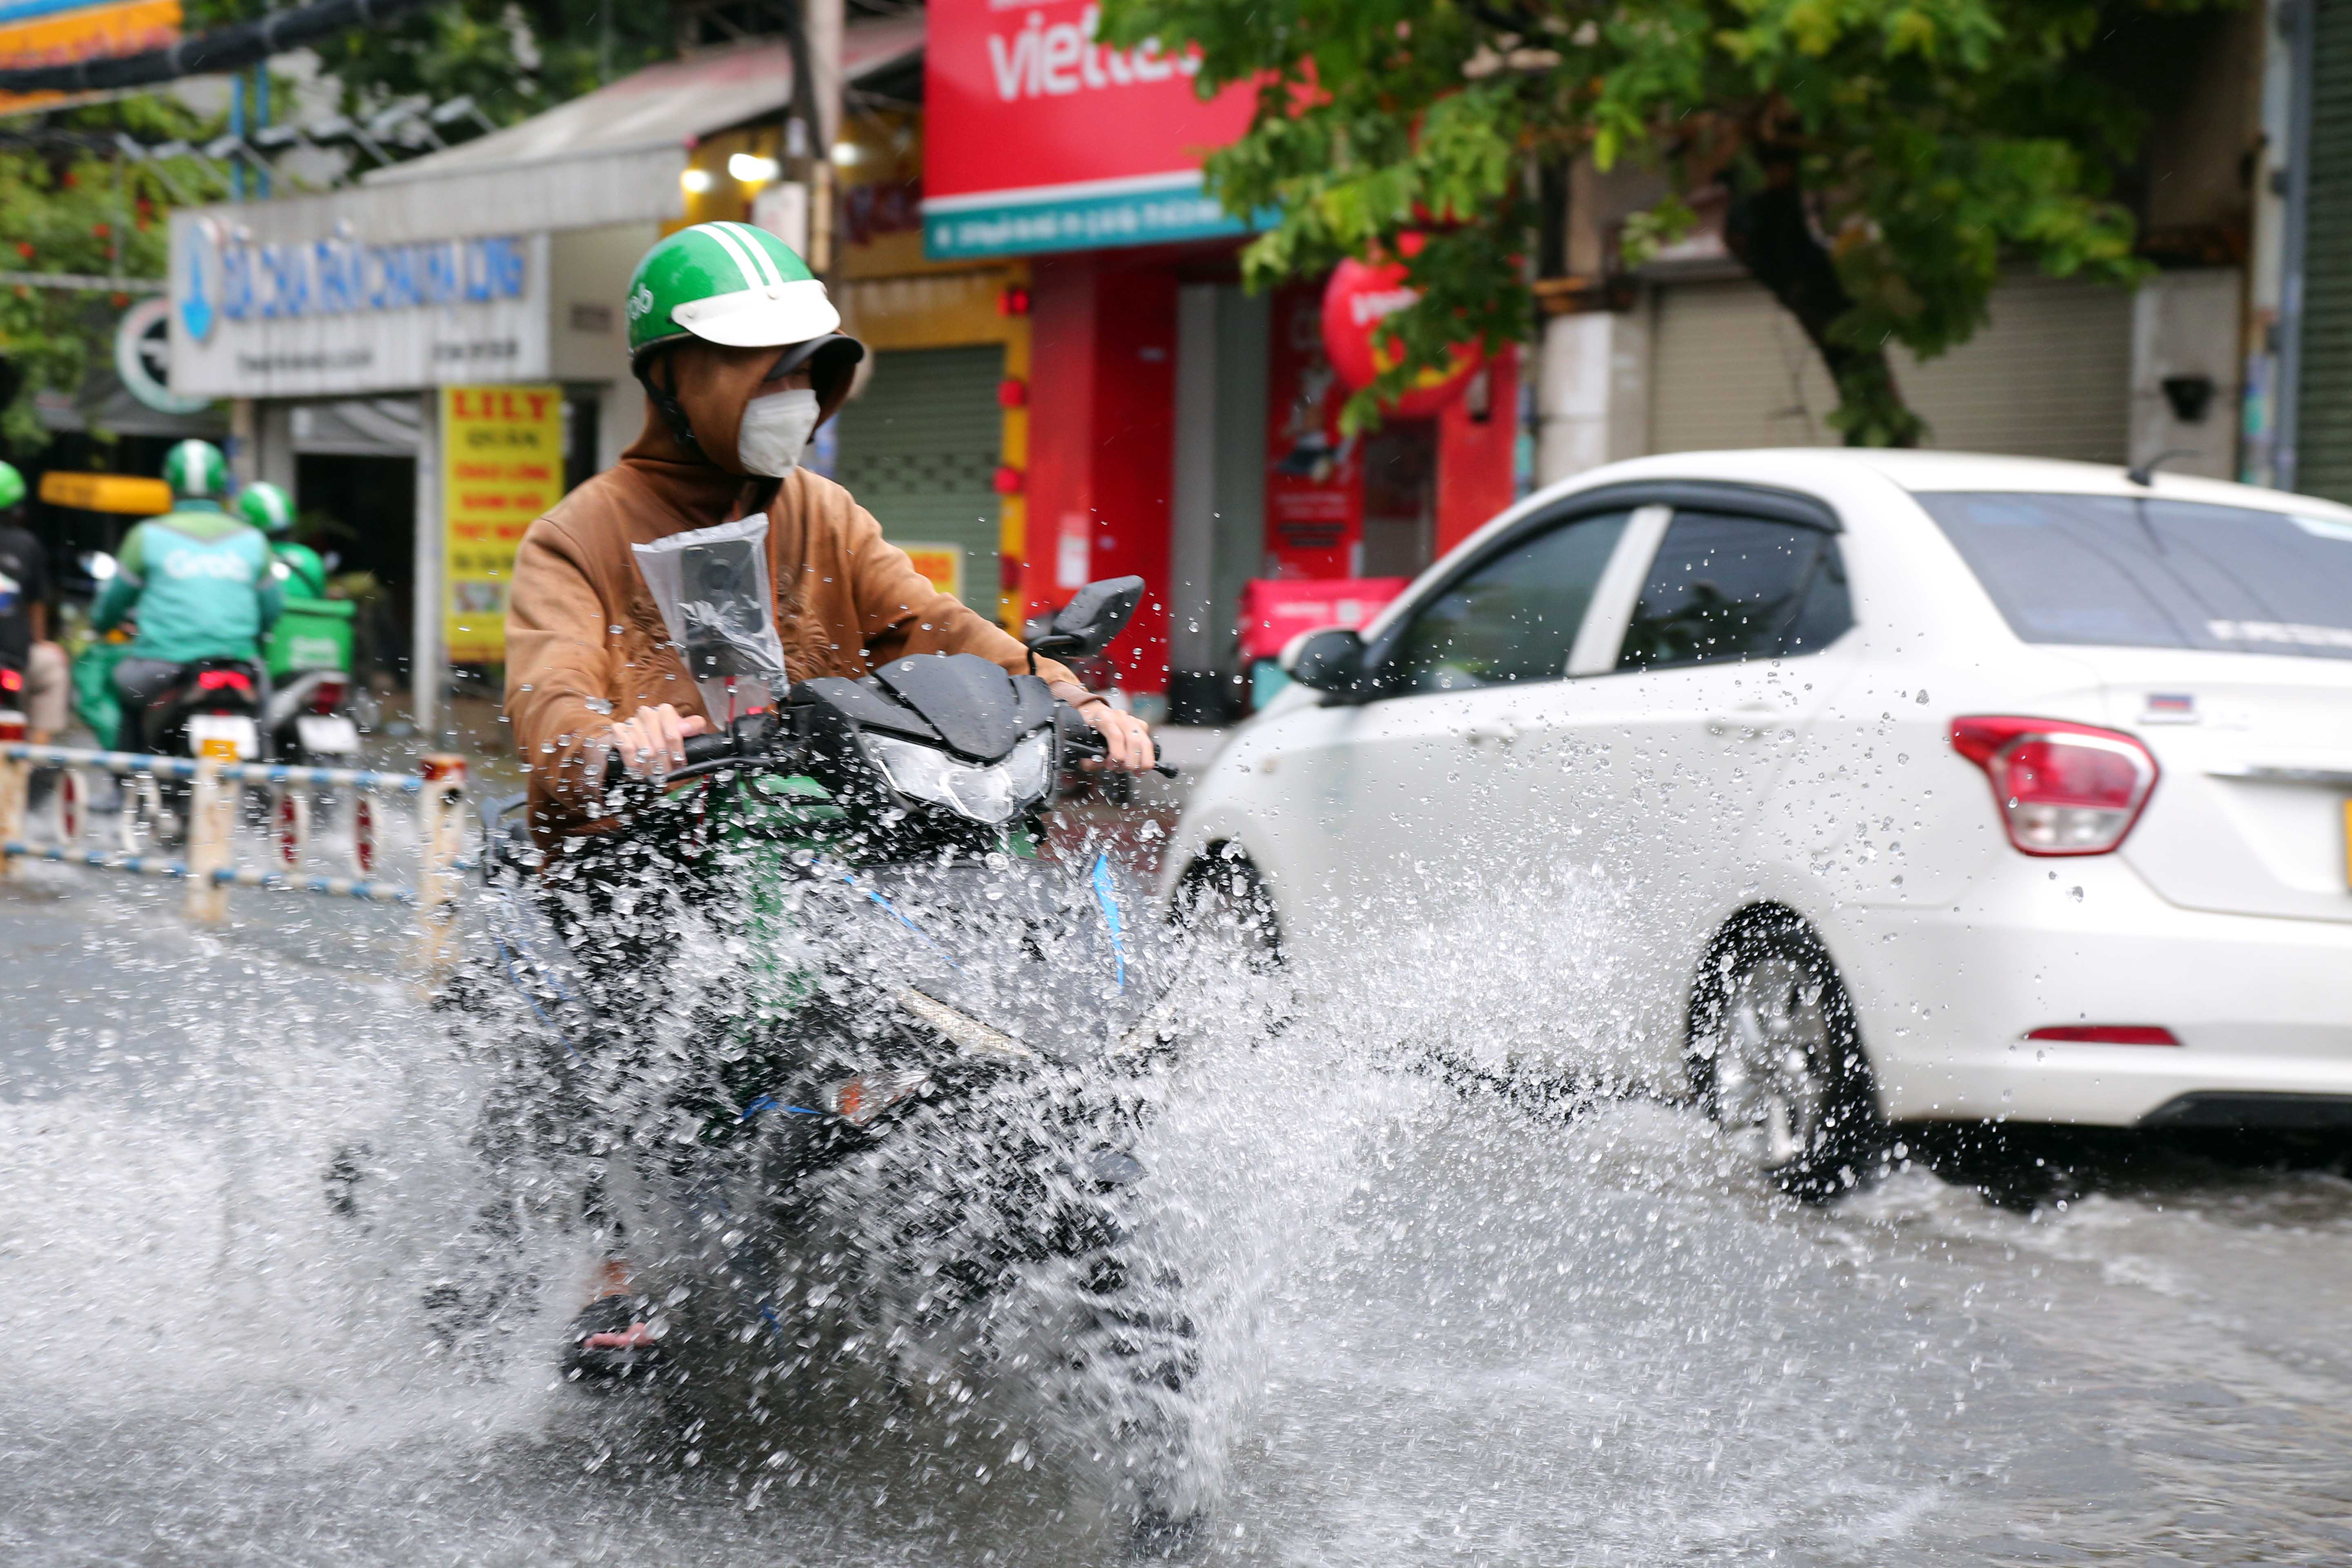 Mưa lớn sau chuỗi ngày nắng nóng, người dân TP.HCM lại bì bõm lội nước vì đường ngập - 9